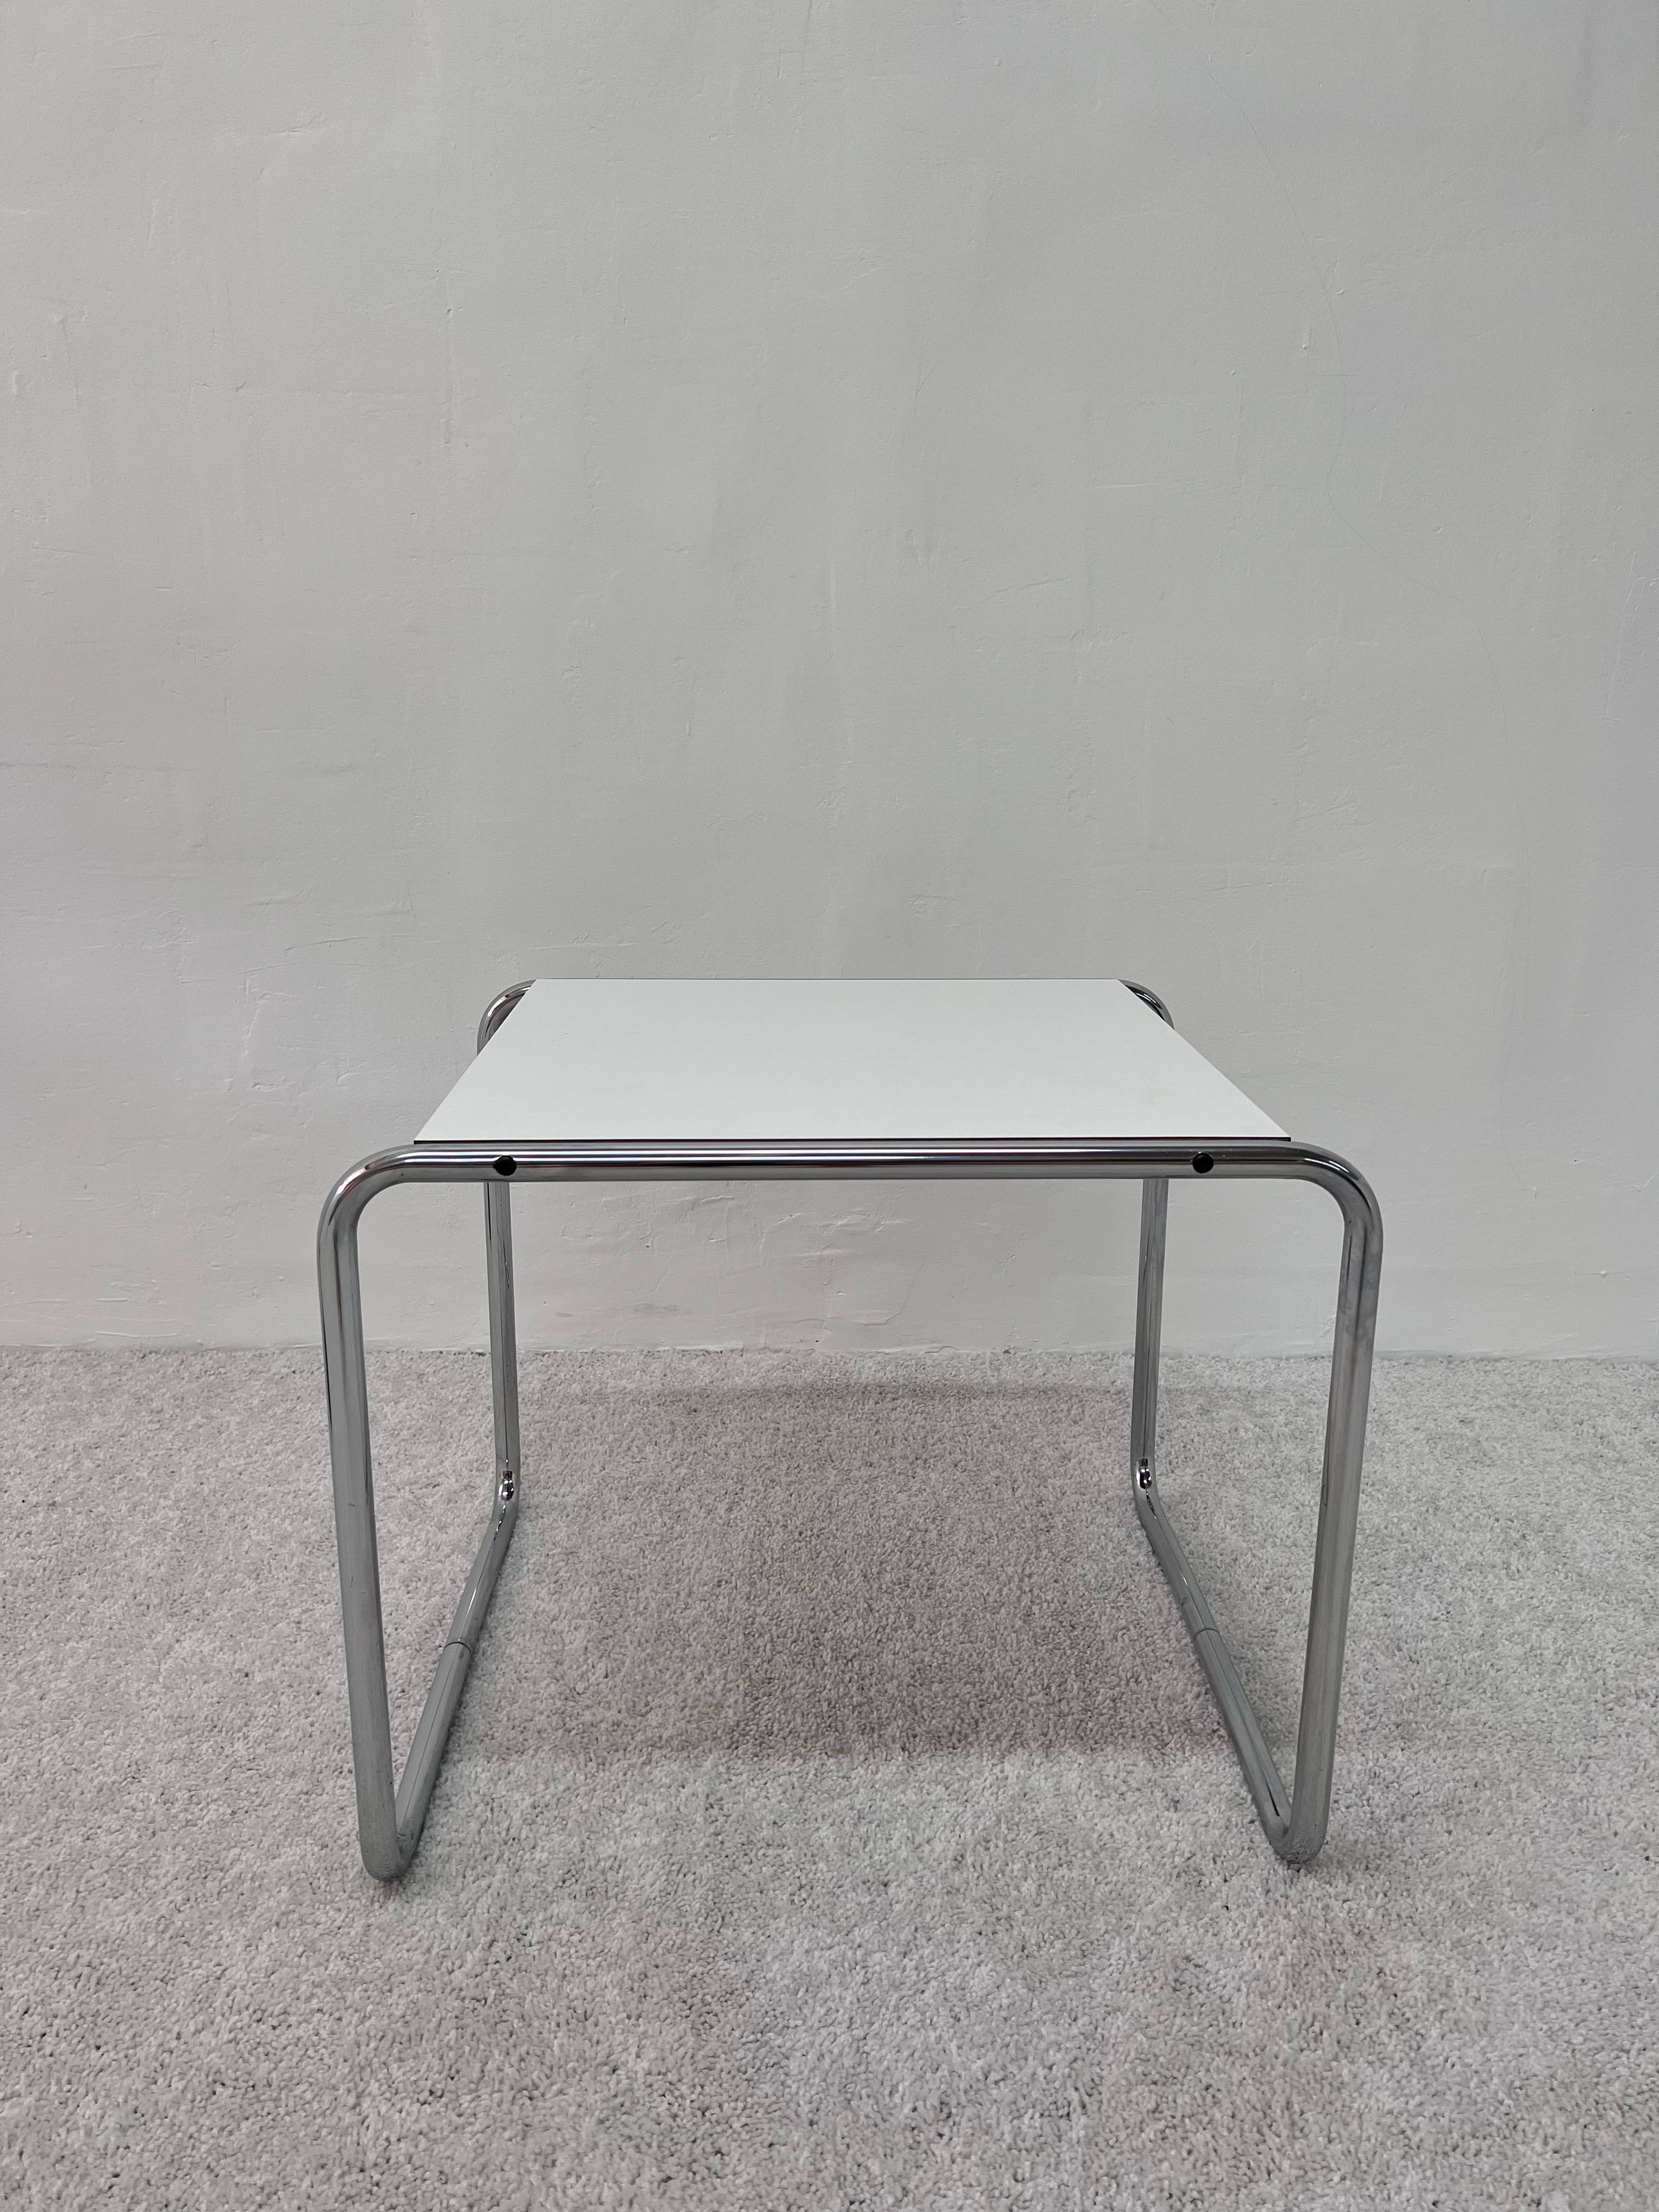 Original white laminate with chrome tubular leg side table designed by Marcel Breuer for Gavina.